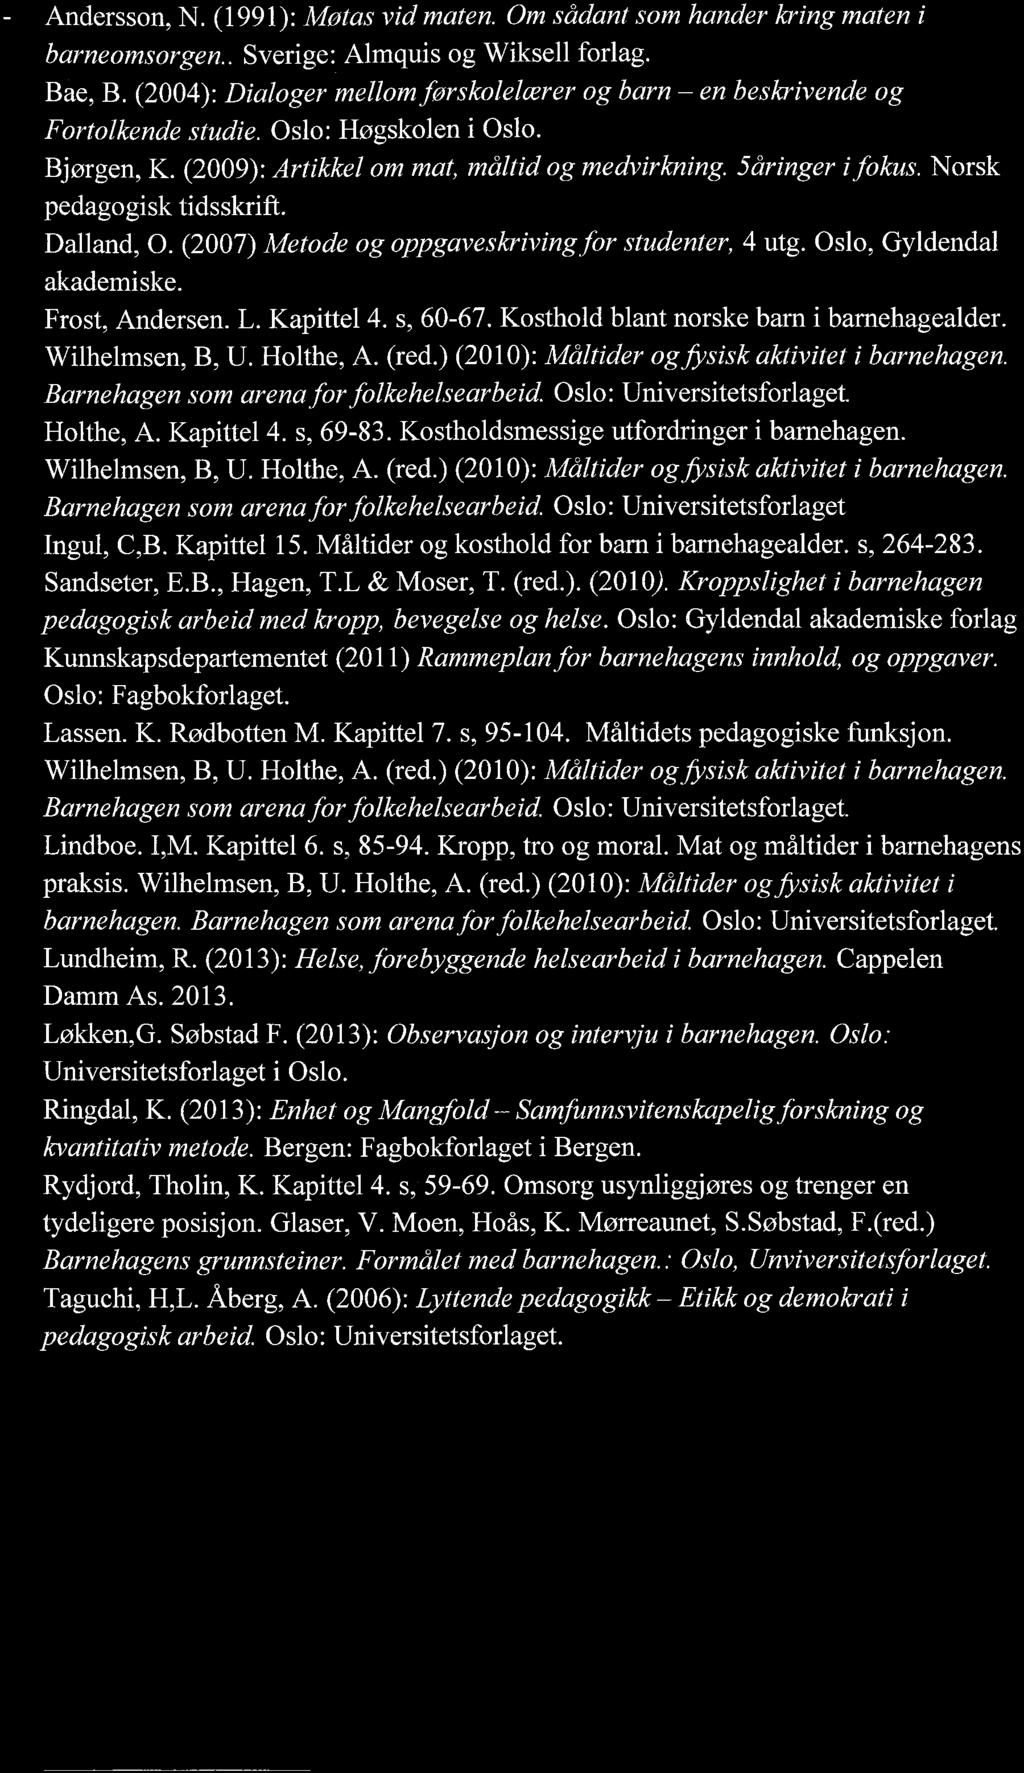 Norsk, pedagogisk tidsskrift. - Dalland, 0. (2007) Metode og oppgaveskrivingfor studenter, 4 utg. Oslo, Gyldendal akademiske. Frost, Andersen. L. Kapittel 4. s, 60-67.